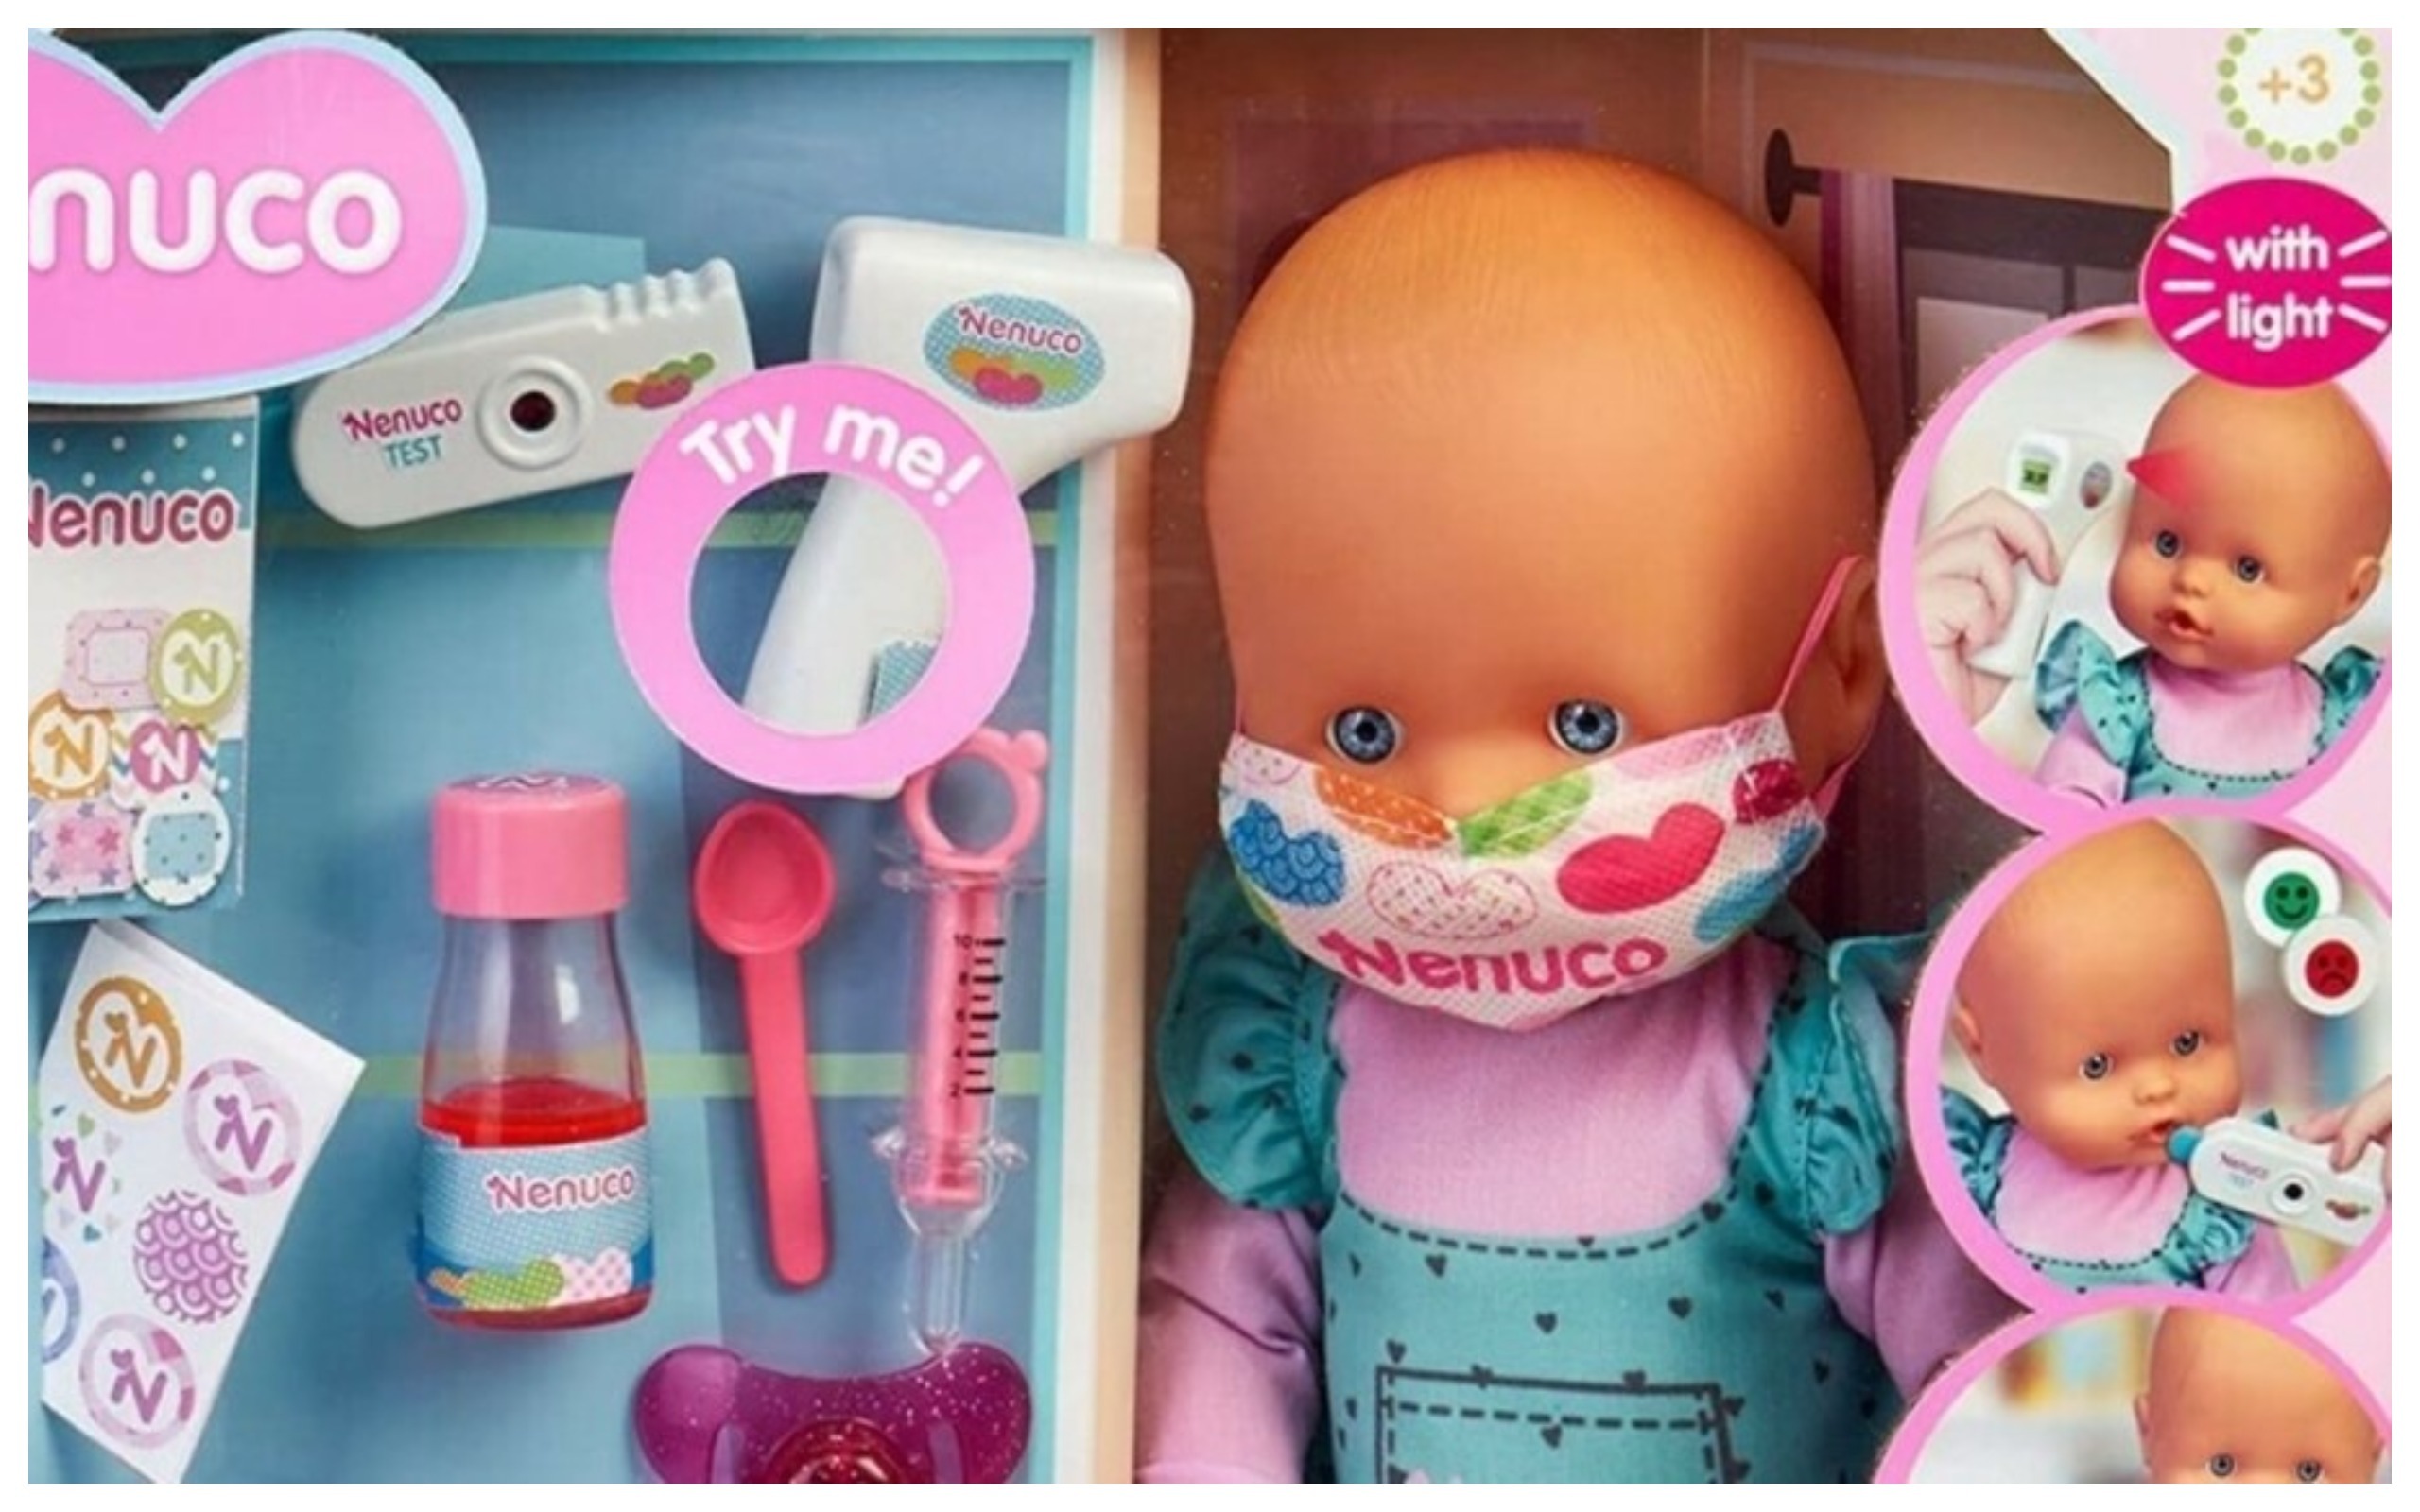 Mascherina e test fai da te: arriva il bambolotto con gli accessori per scoprire se è malato